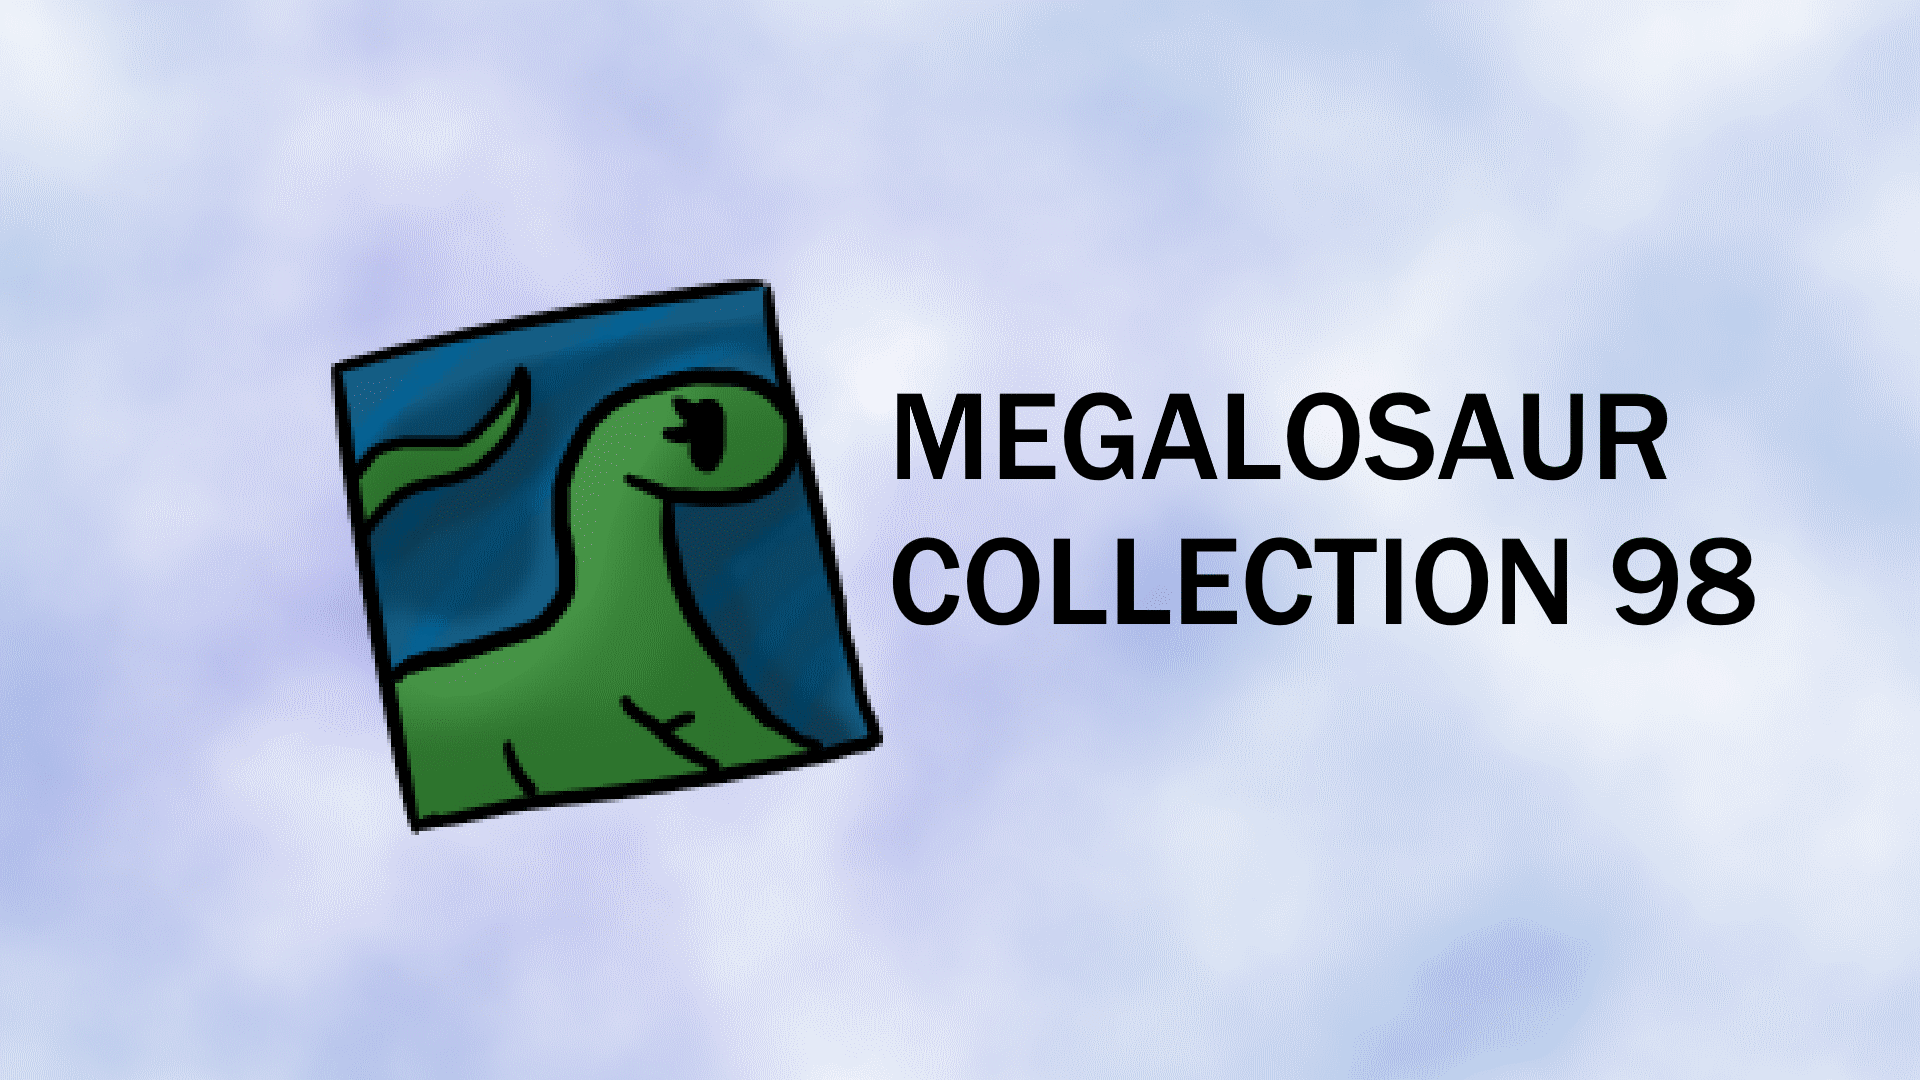 Megalosaur Collection 98